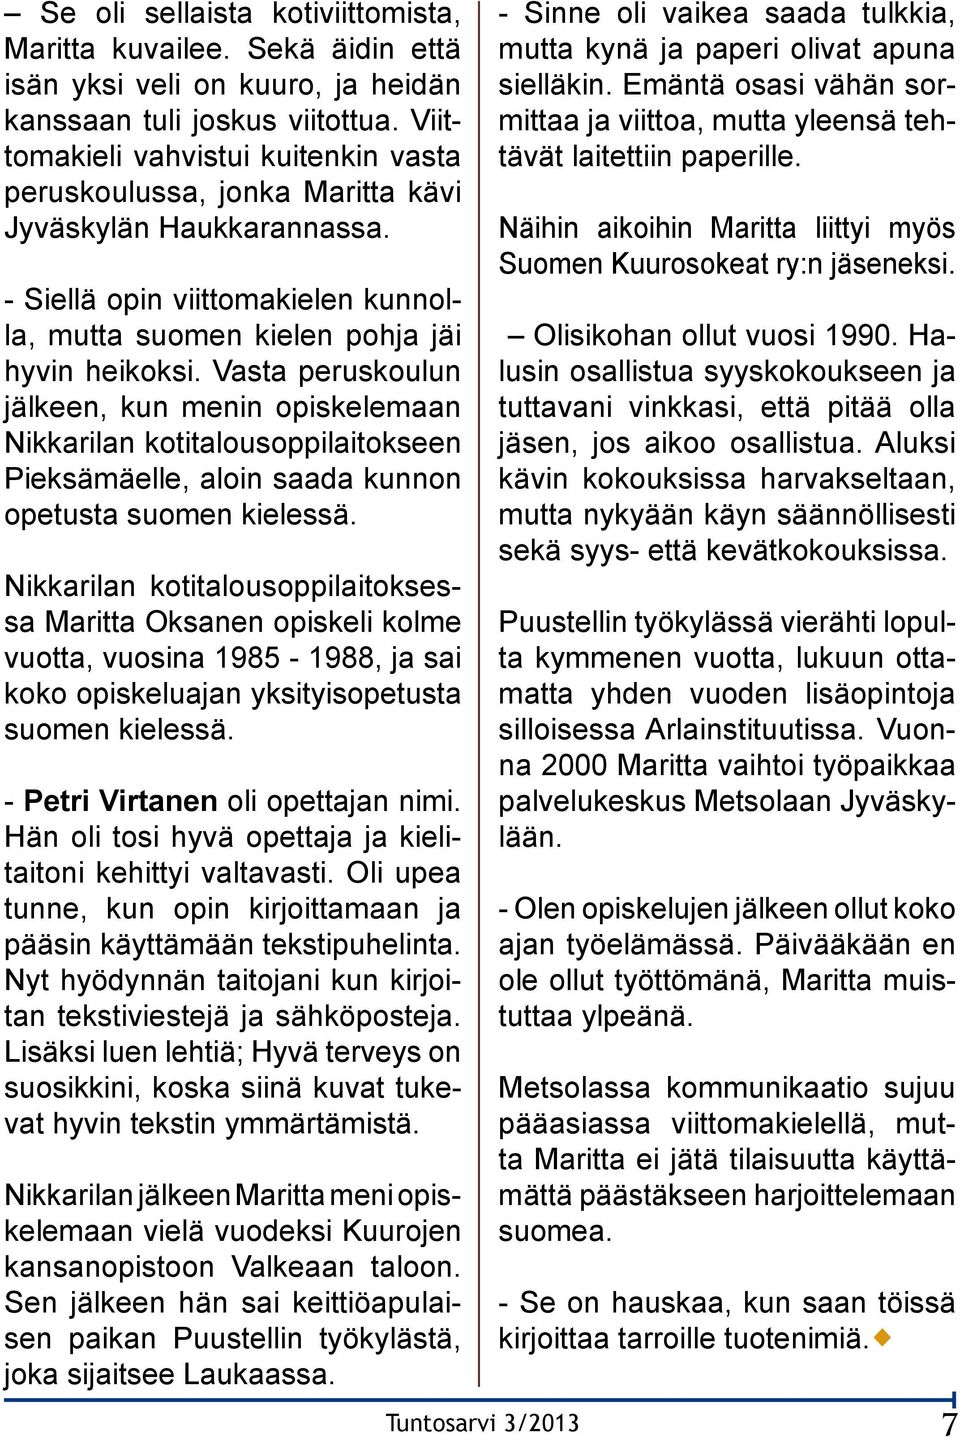 Vasta peruskoulun jälkeen, kun menin opiskelemaan Nikkarilan kotitalousoppilaitokseen Pieksämäelle, aloin saada kunnon opetusta suomen kielessä.